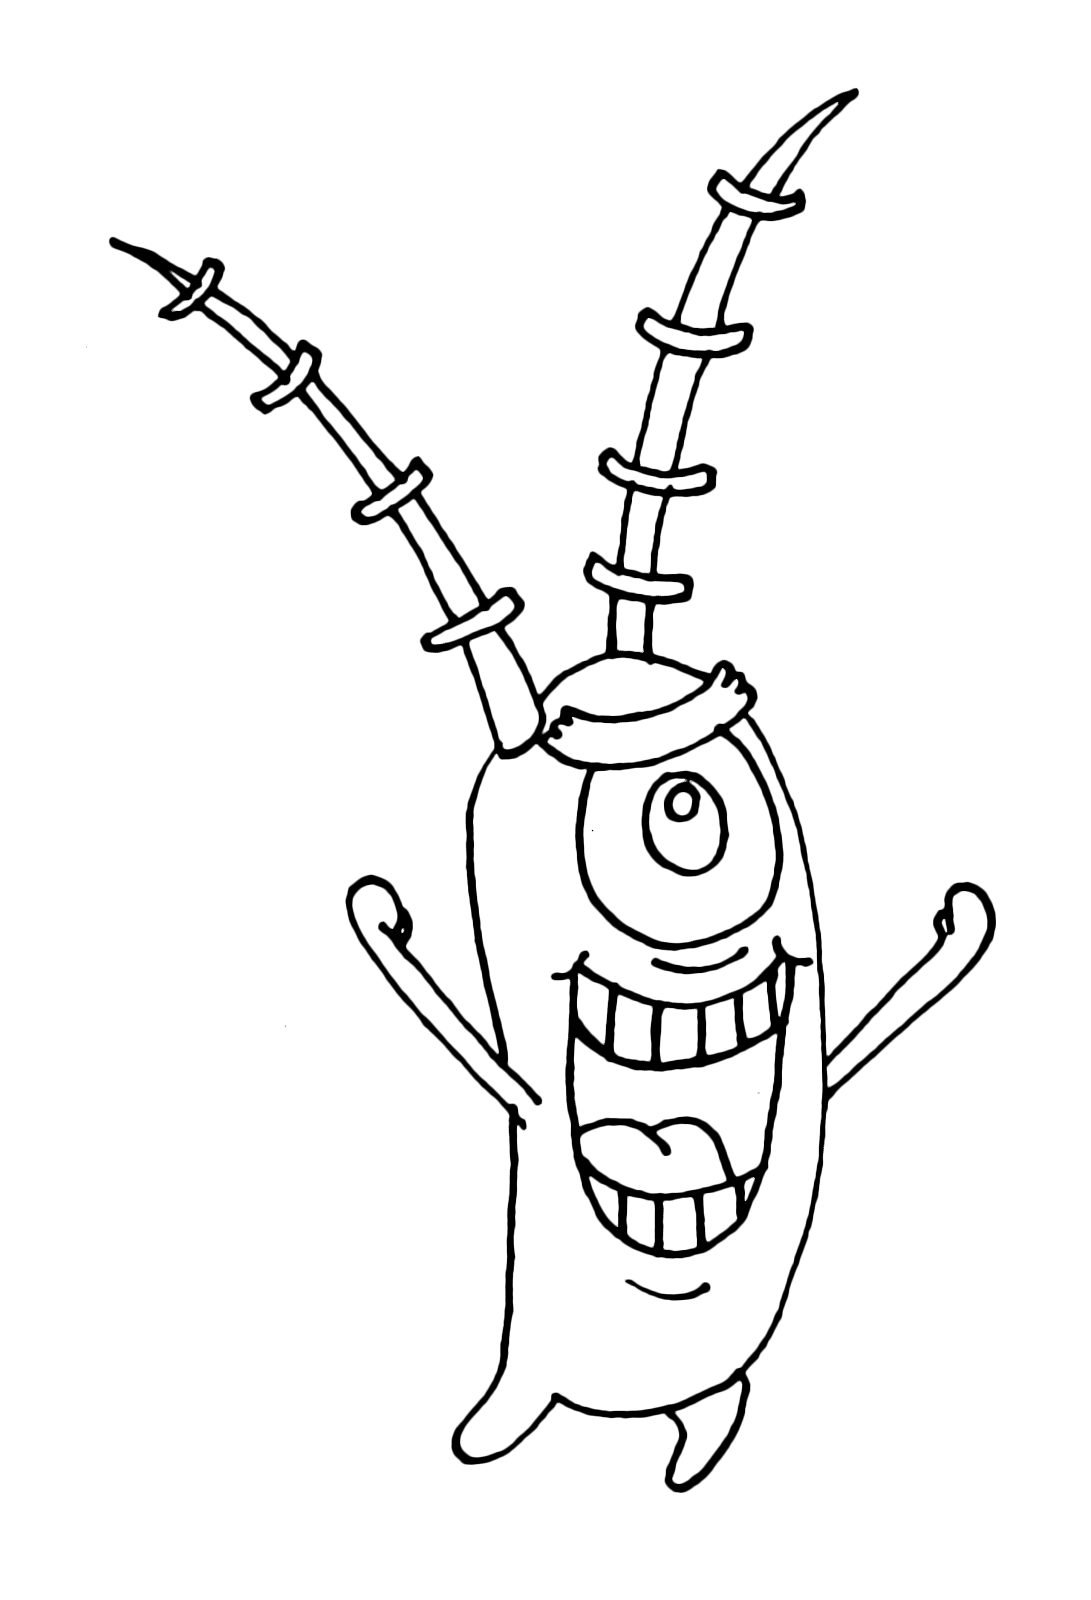 SpongeBob - Plankton esulta felice